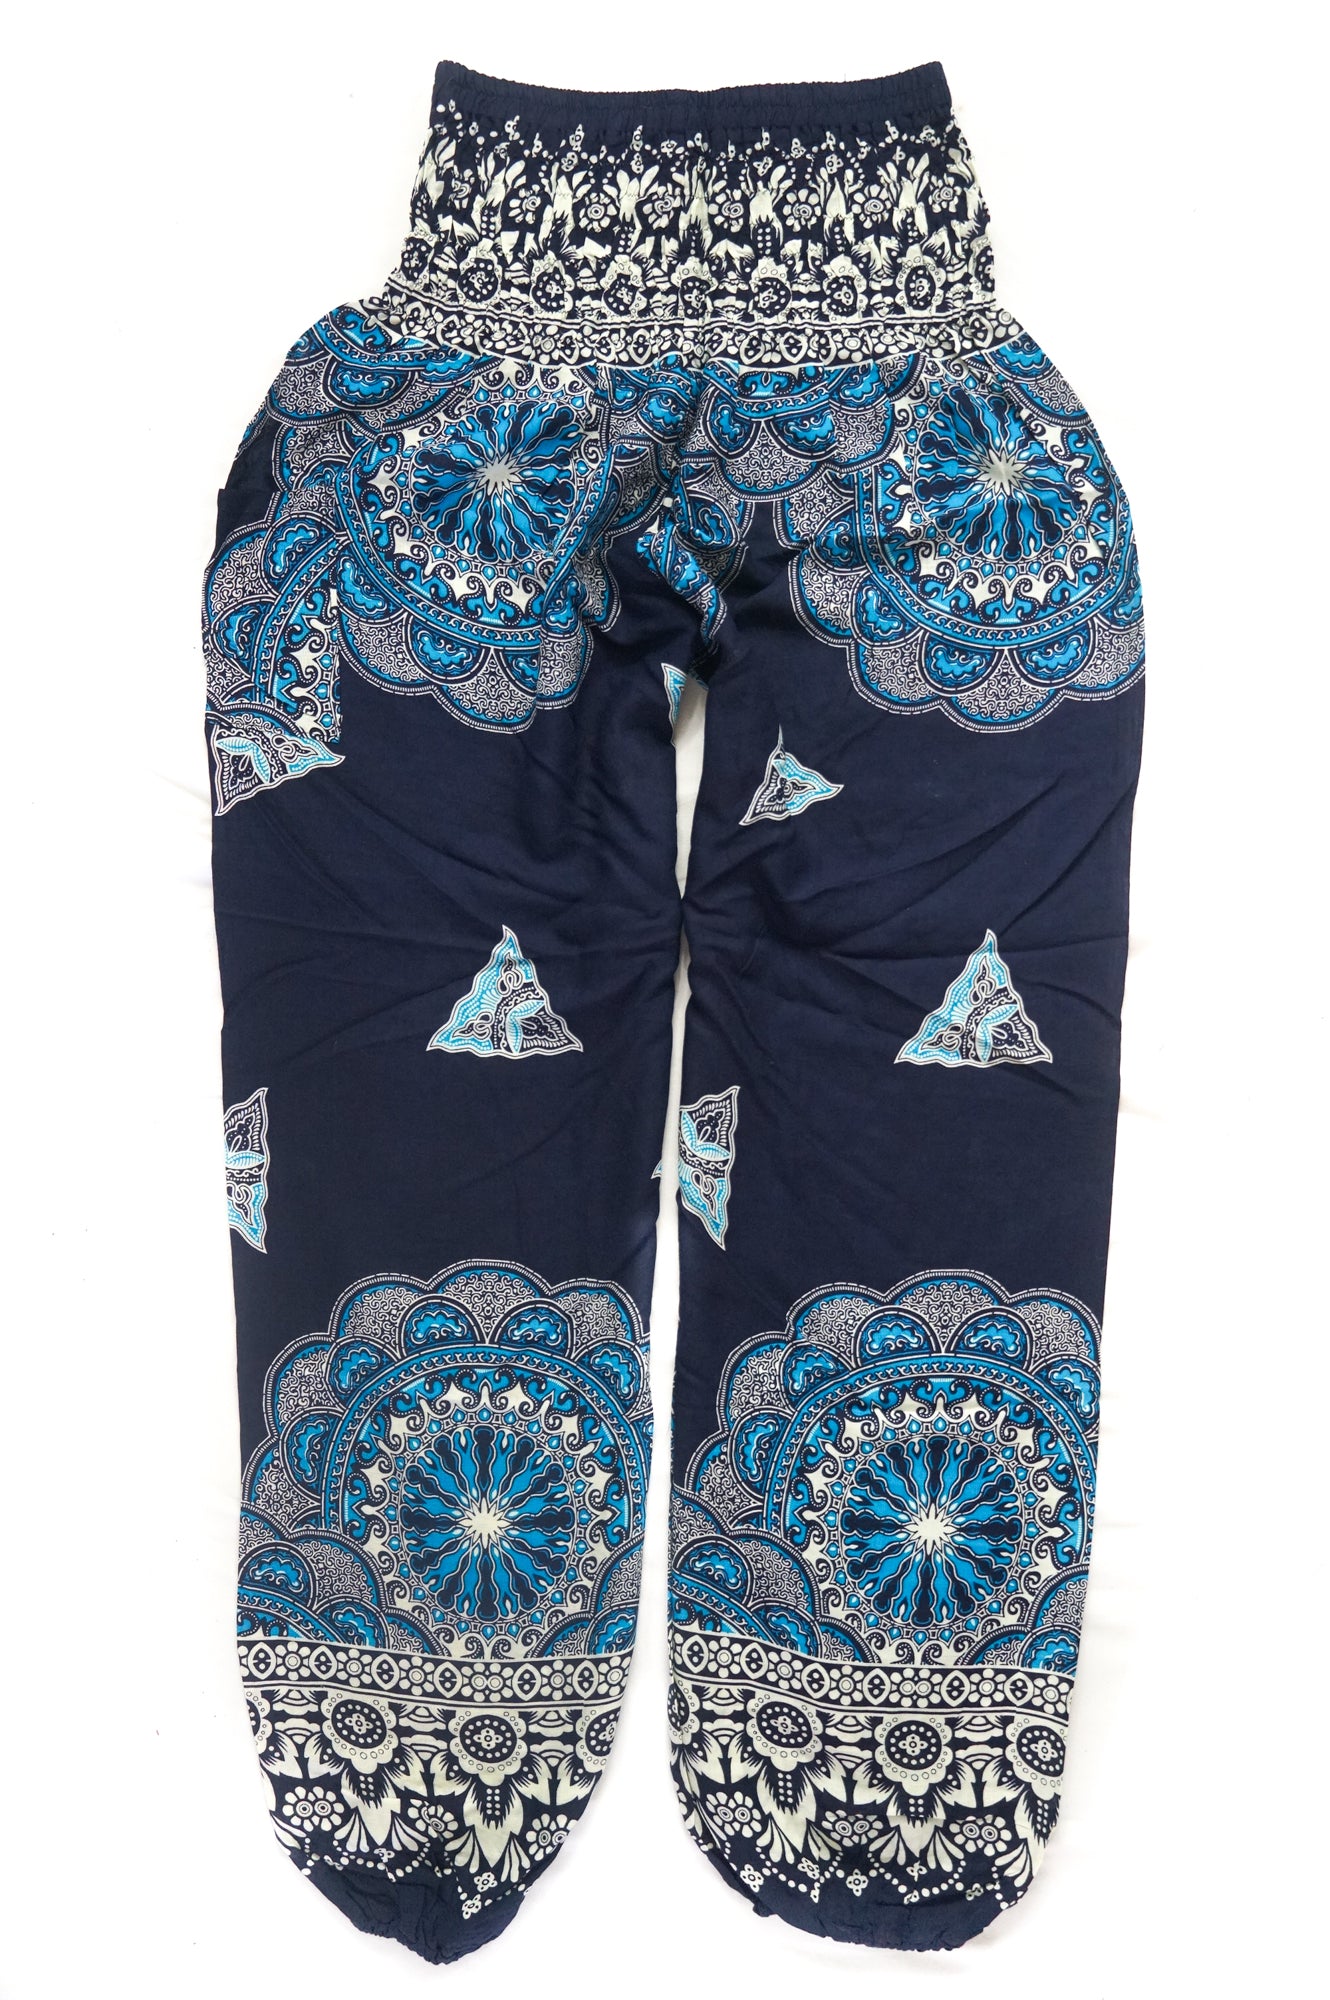 Royal Blue Mantra Harem Pants - Lamsri Bohemian